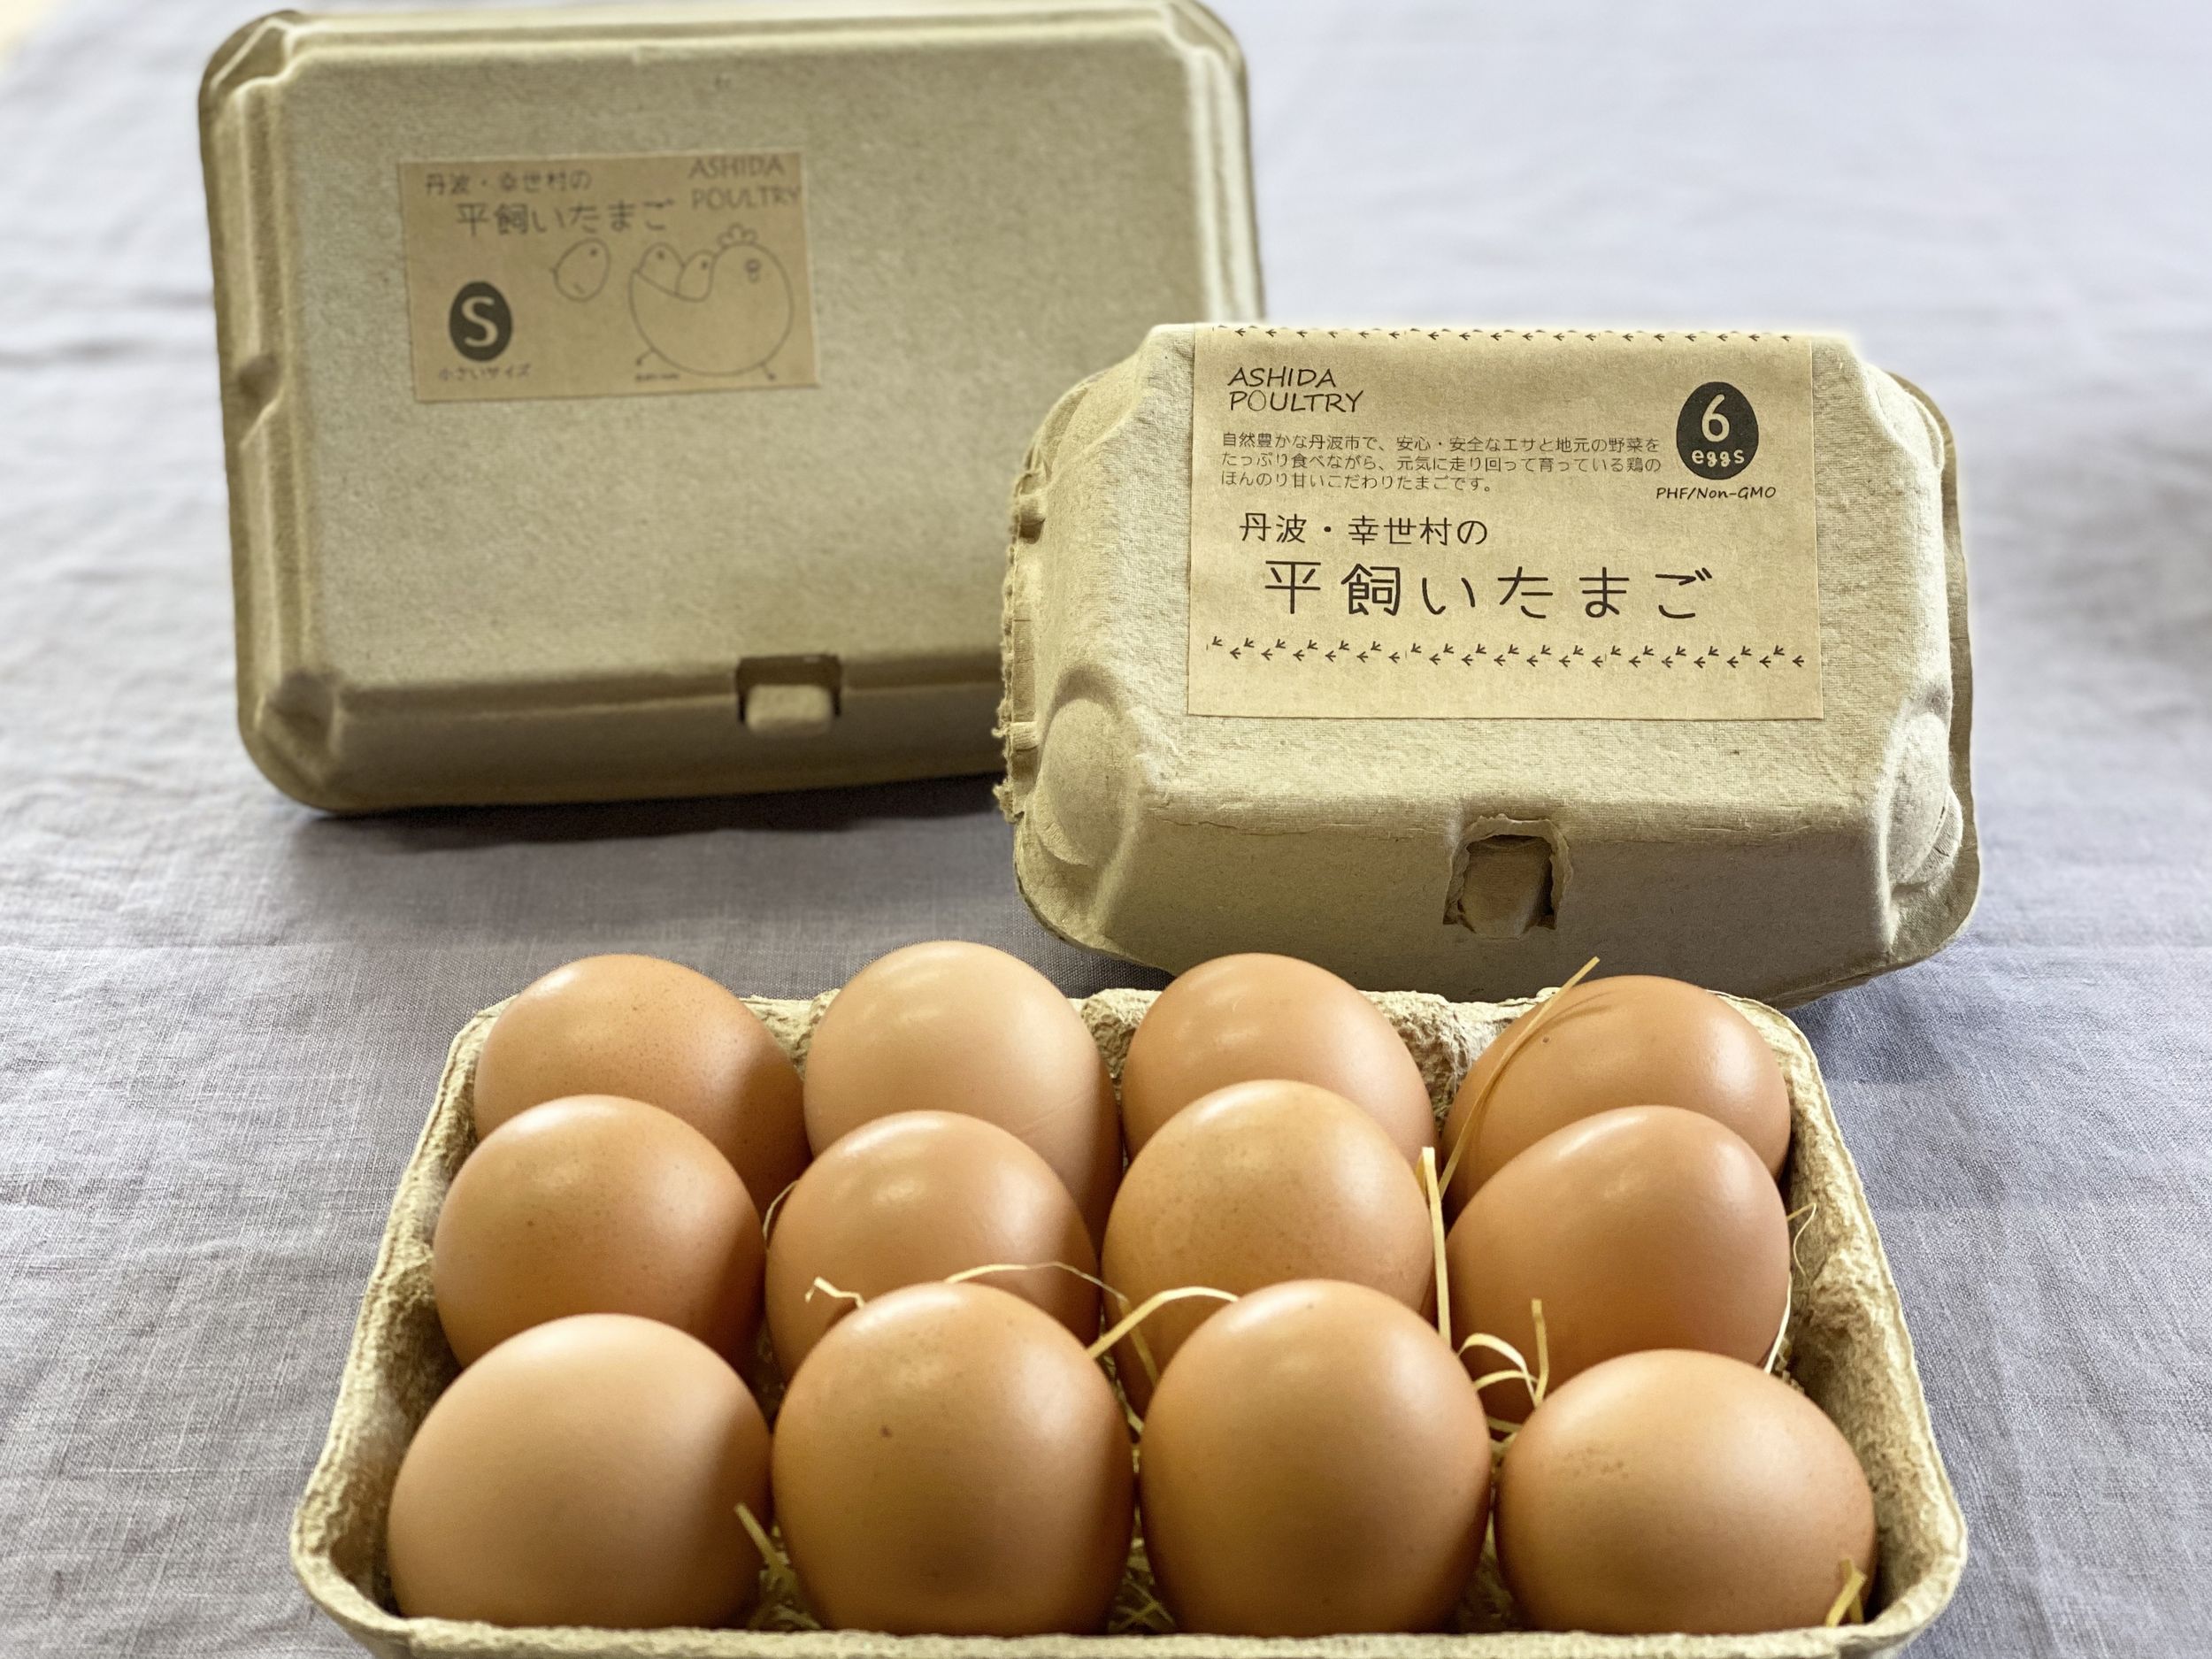 平飼いたまご 10個×3パック (北海道 Farm Agricola) 産地直送 アグリコラ 卵